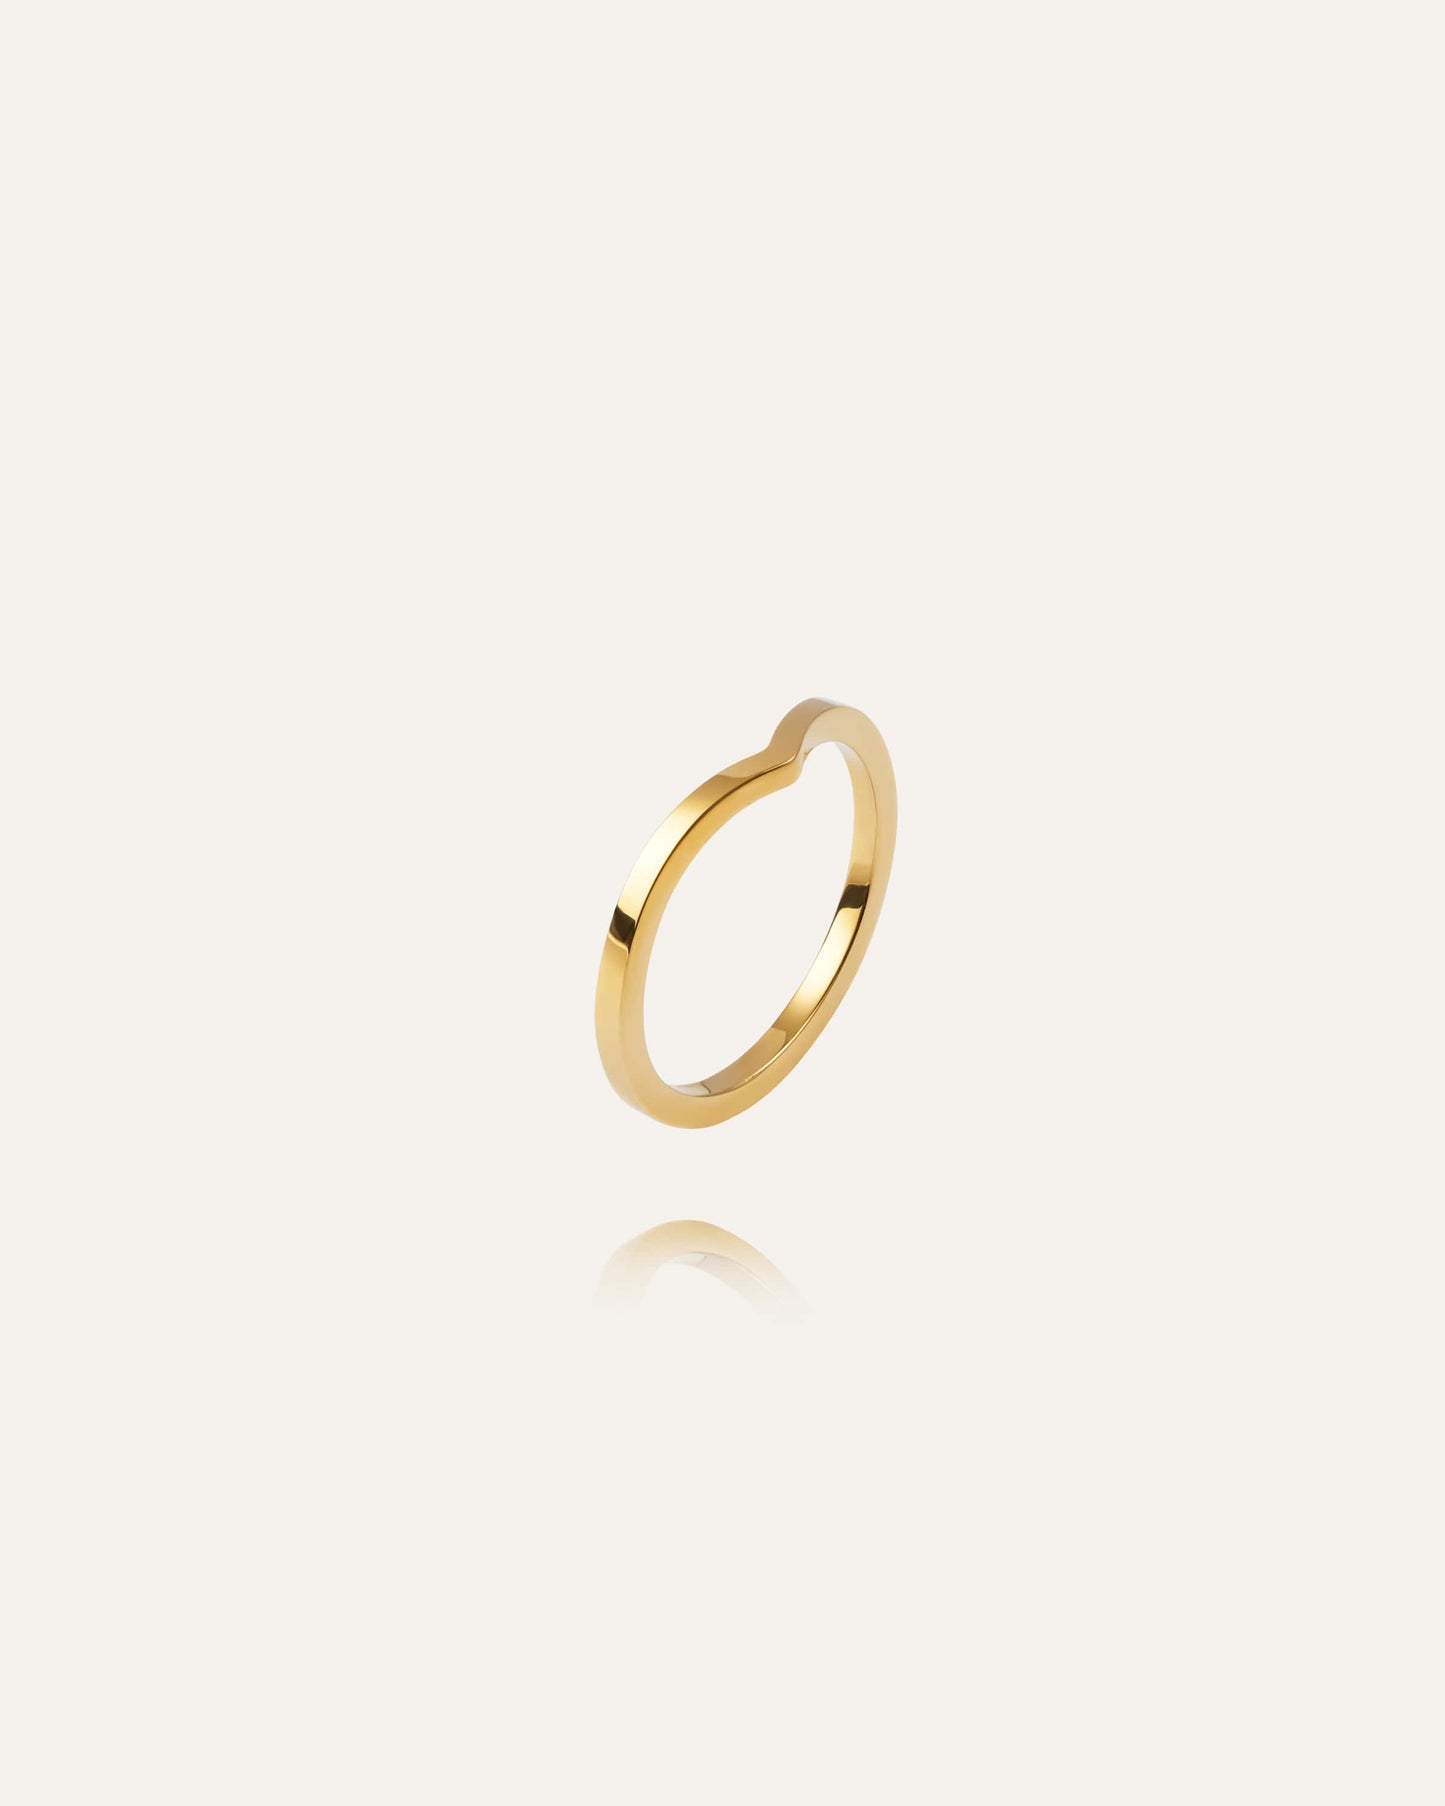 Honest Gold Ring